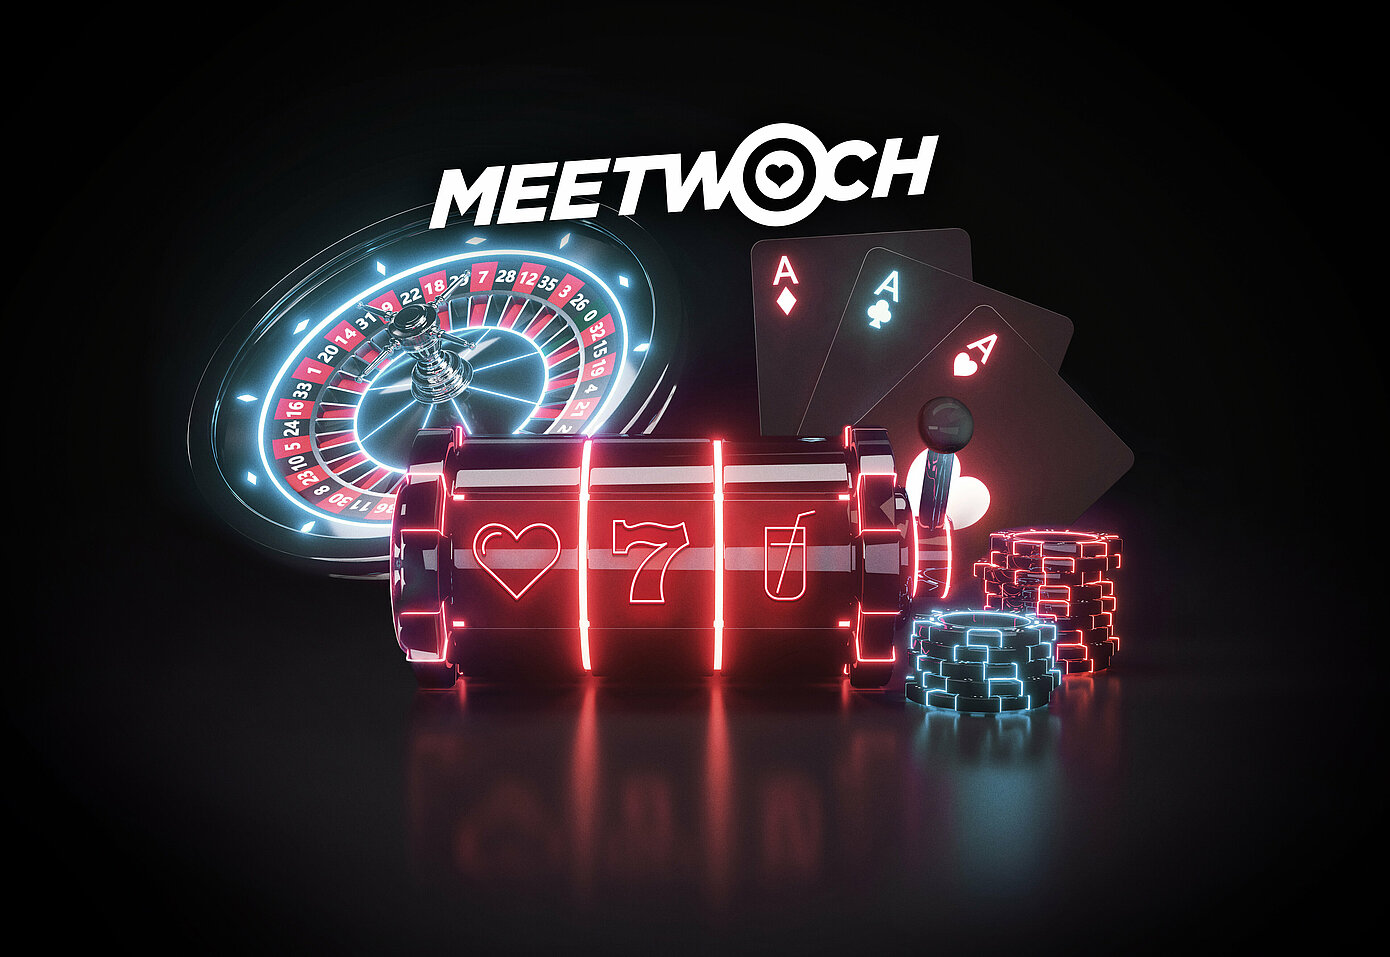 Meetwoch Schriftzug Roulette-Kessel, Slot-Walze, Spielkarten und Jetons mit Leucht-Effekt auf dunklem Hintergrund